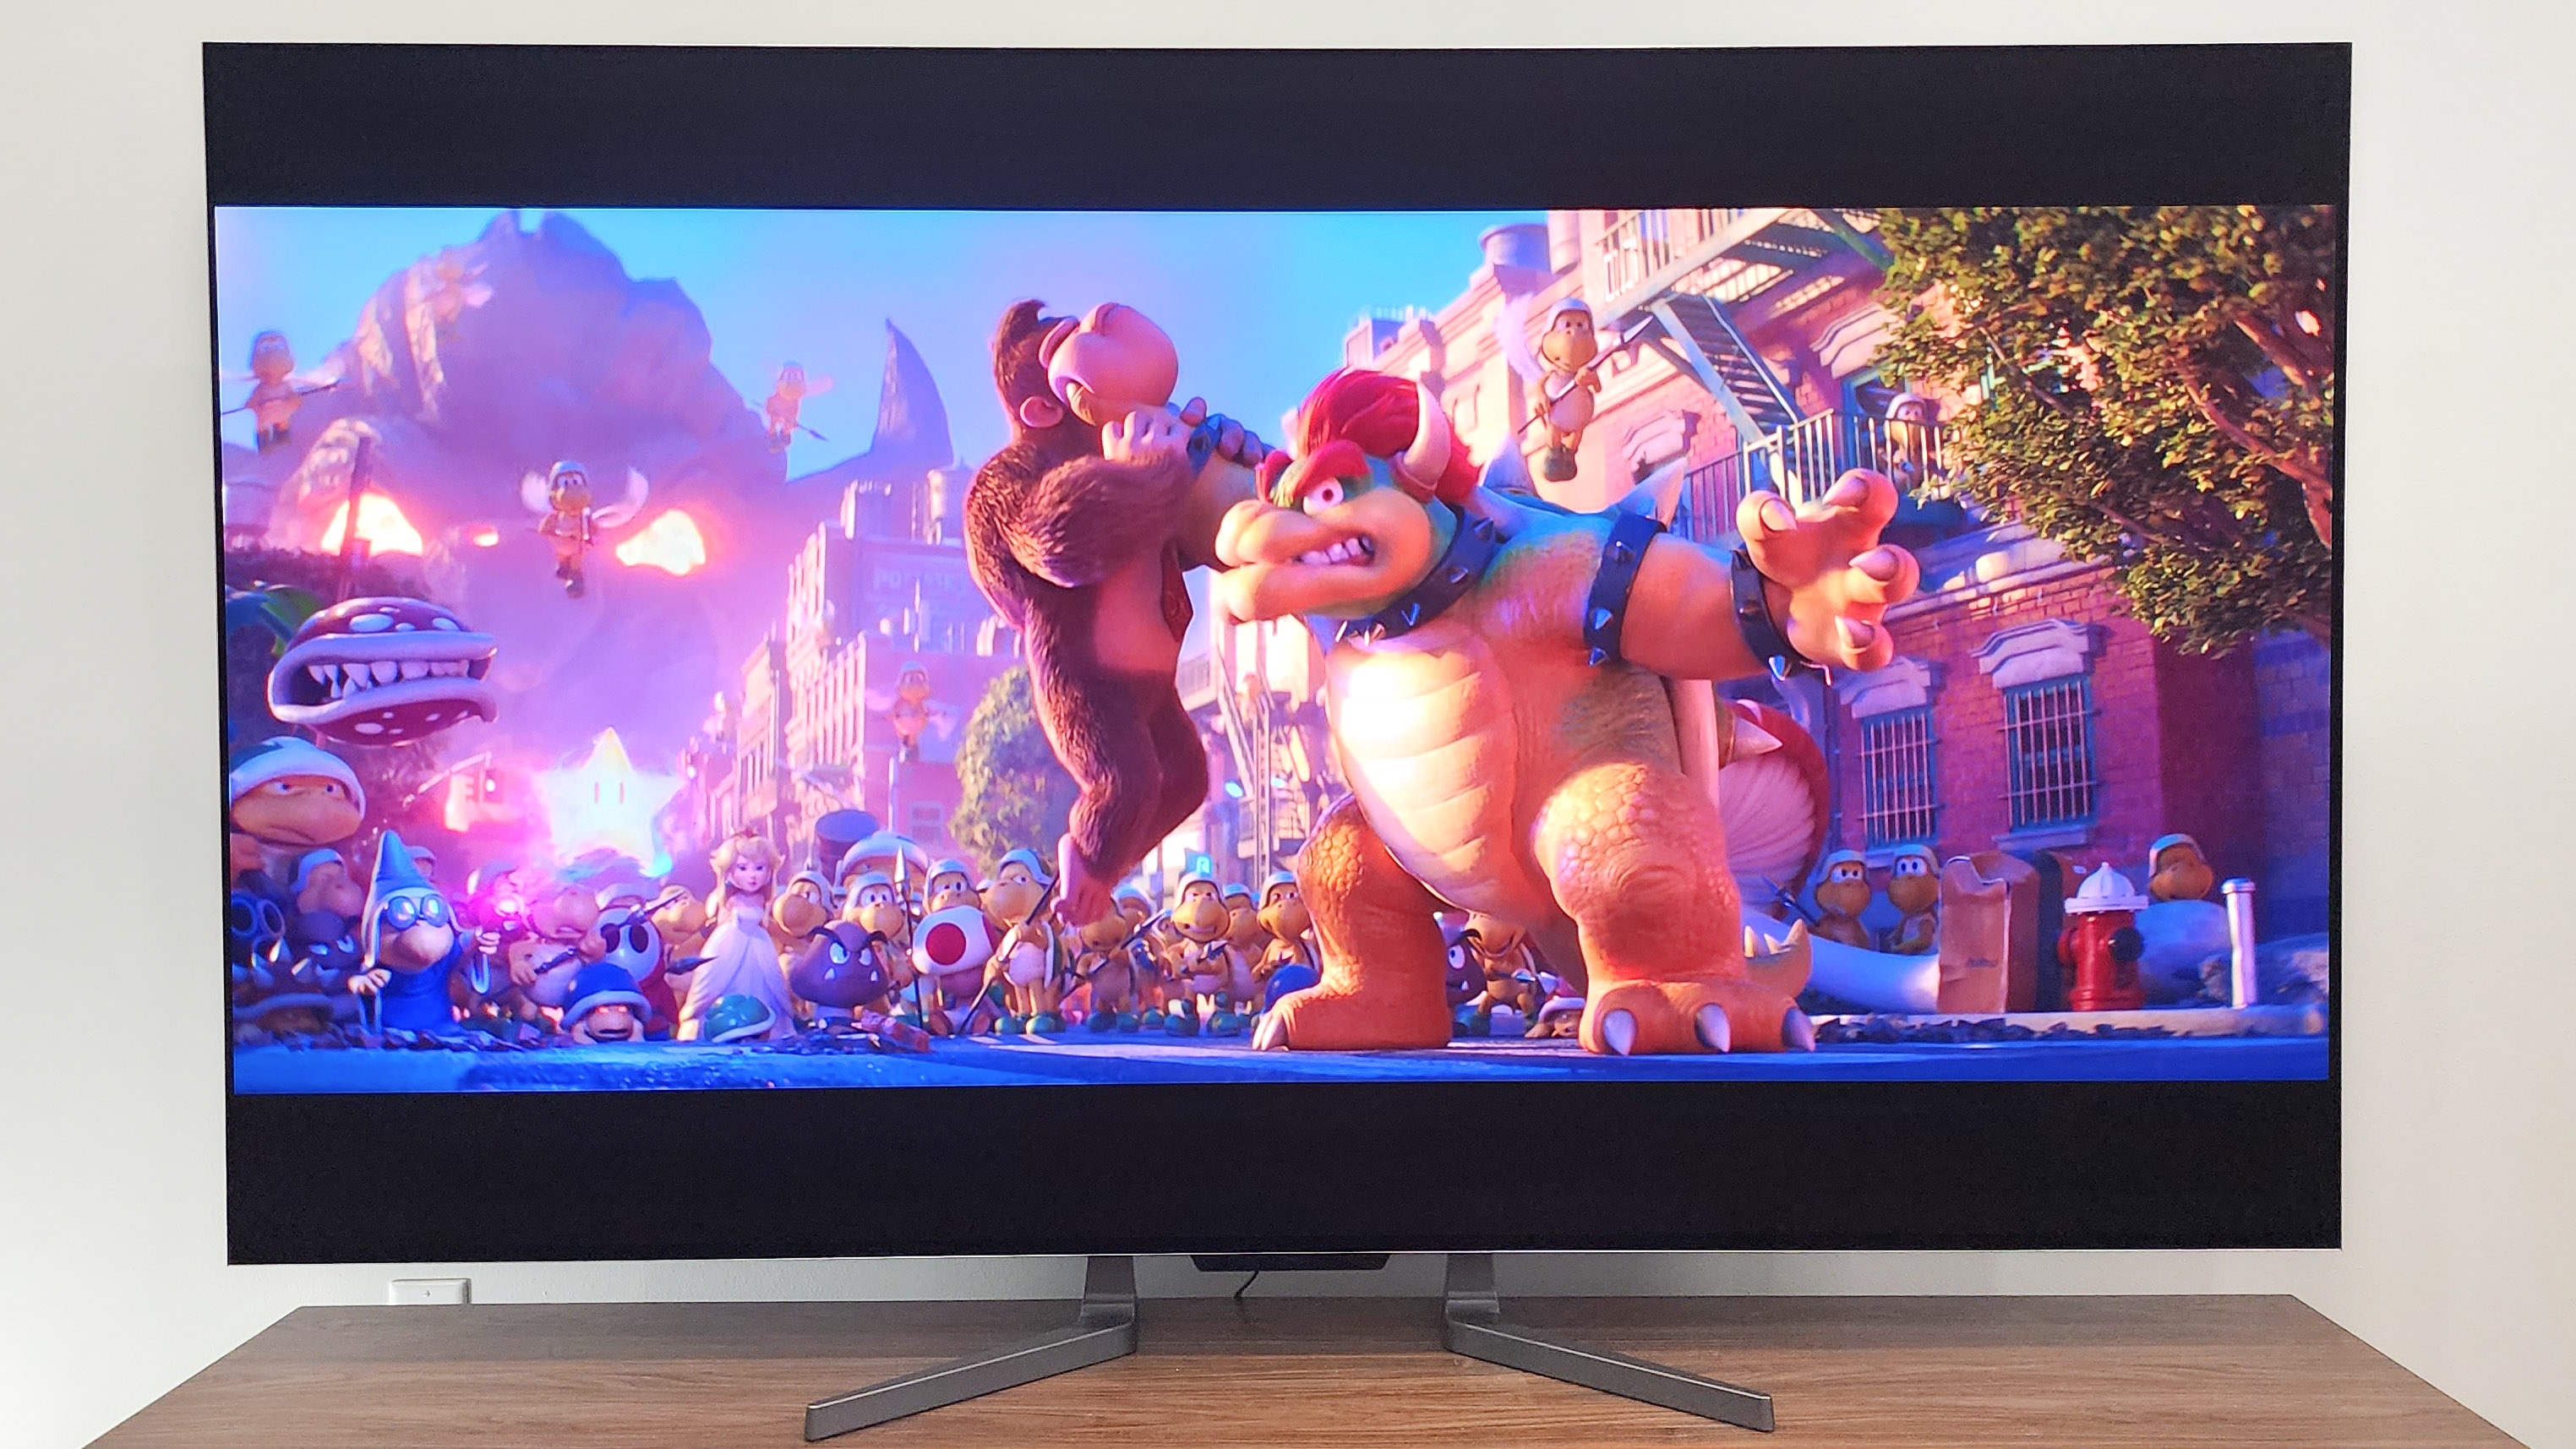 Se muestra el televisor LG OLED evo M3 en la sala de estar con la película de Super Mario Bros en pantalla